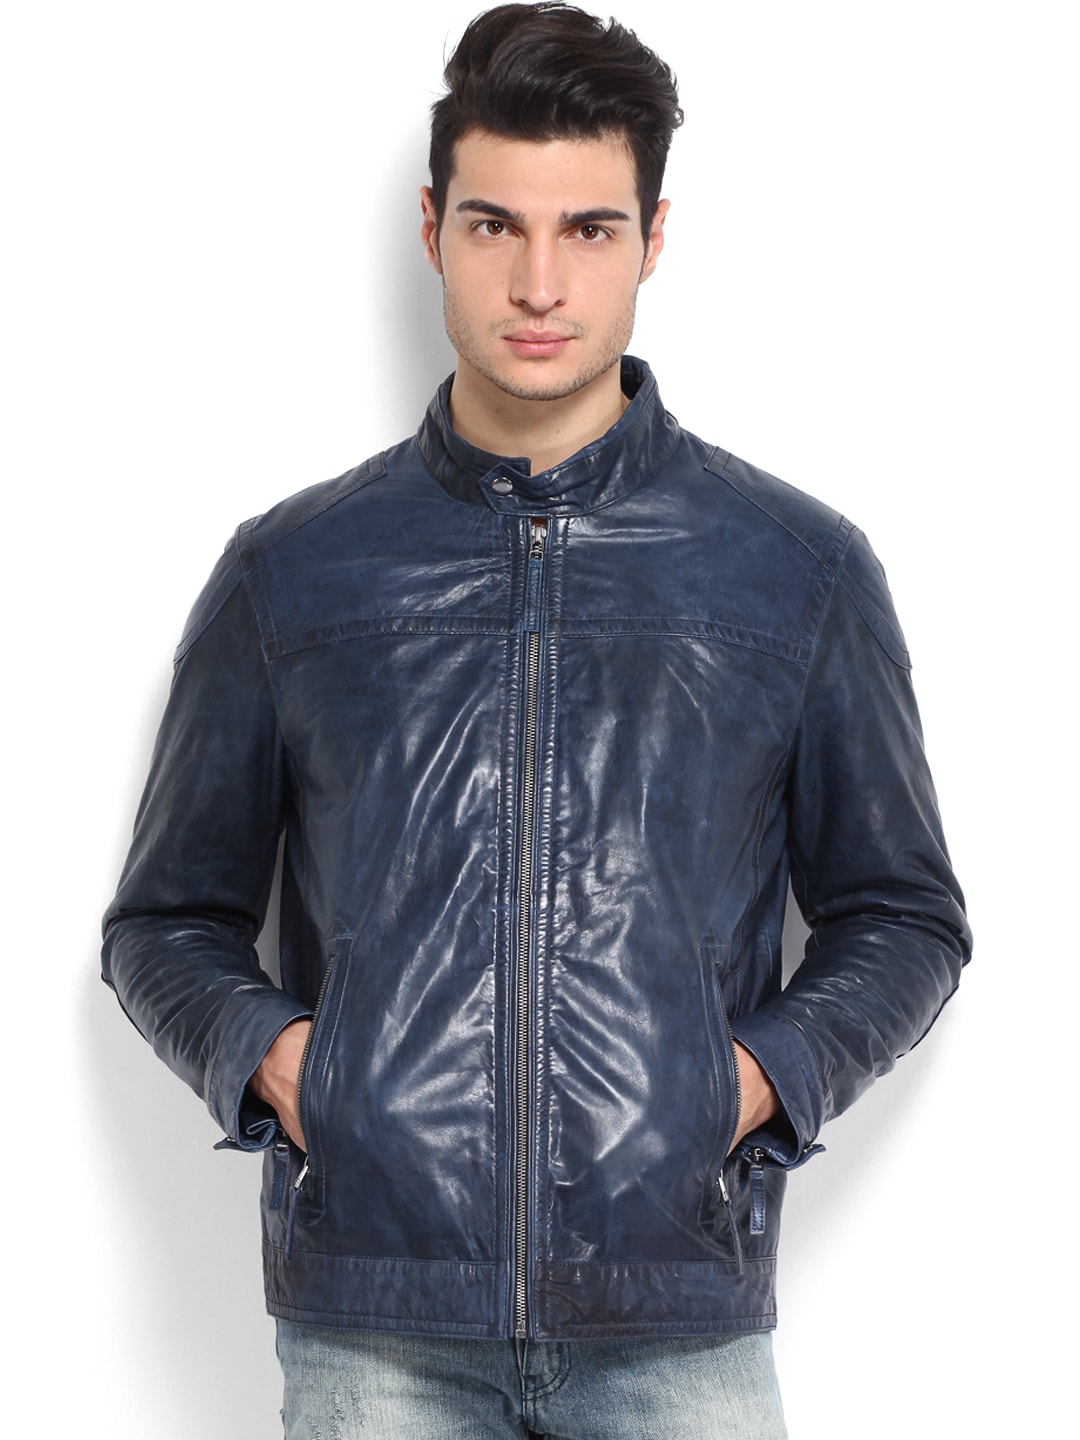 Blue Leather Jacket For Guys - Jacket